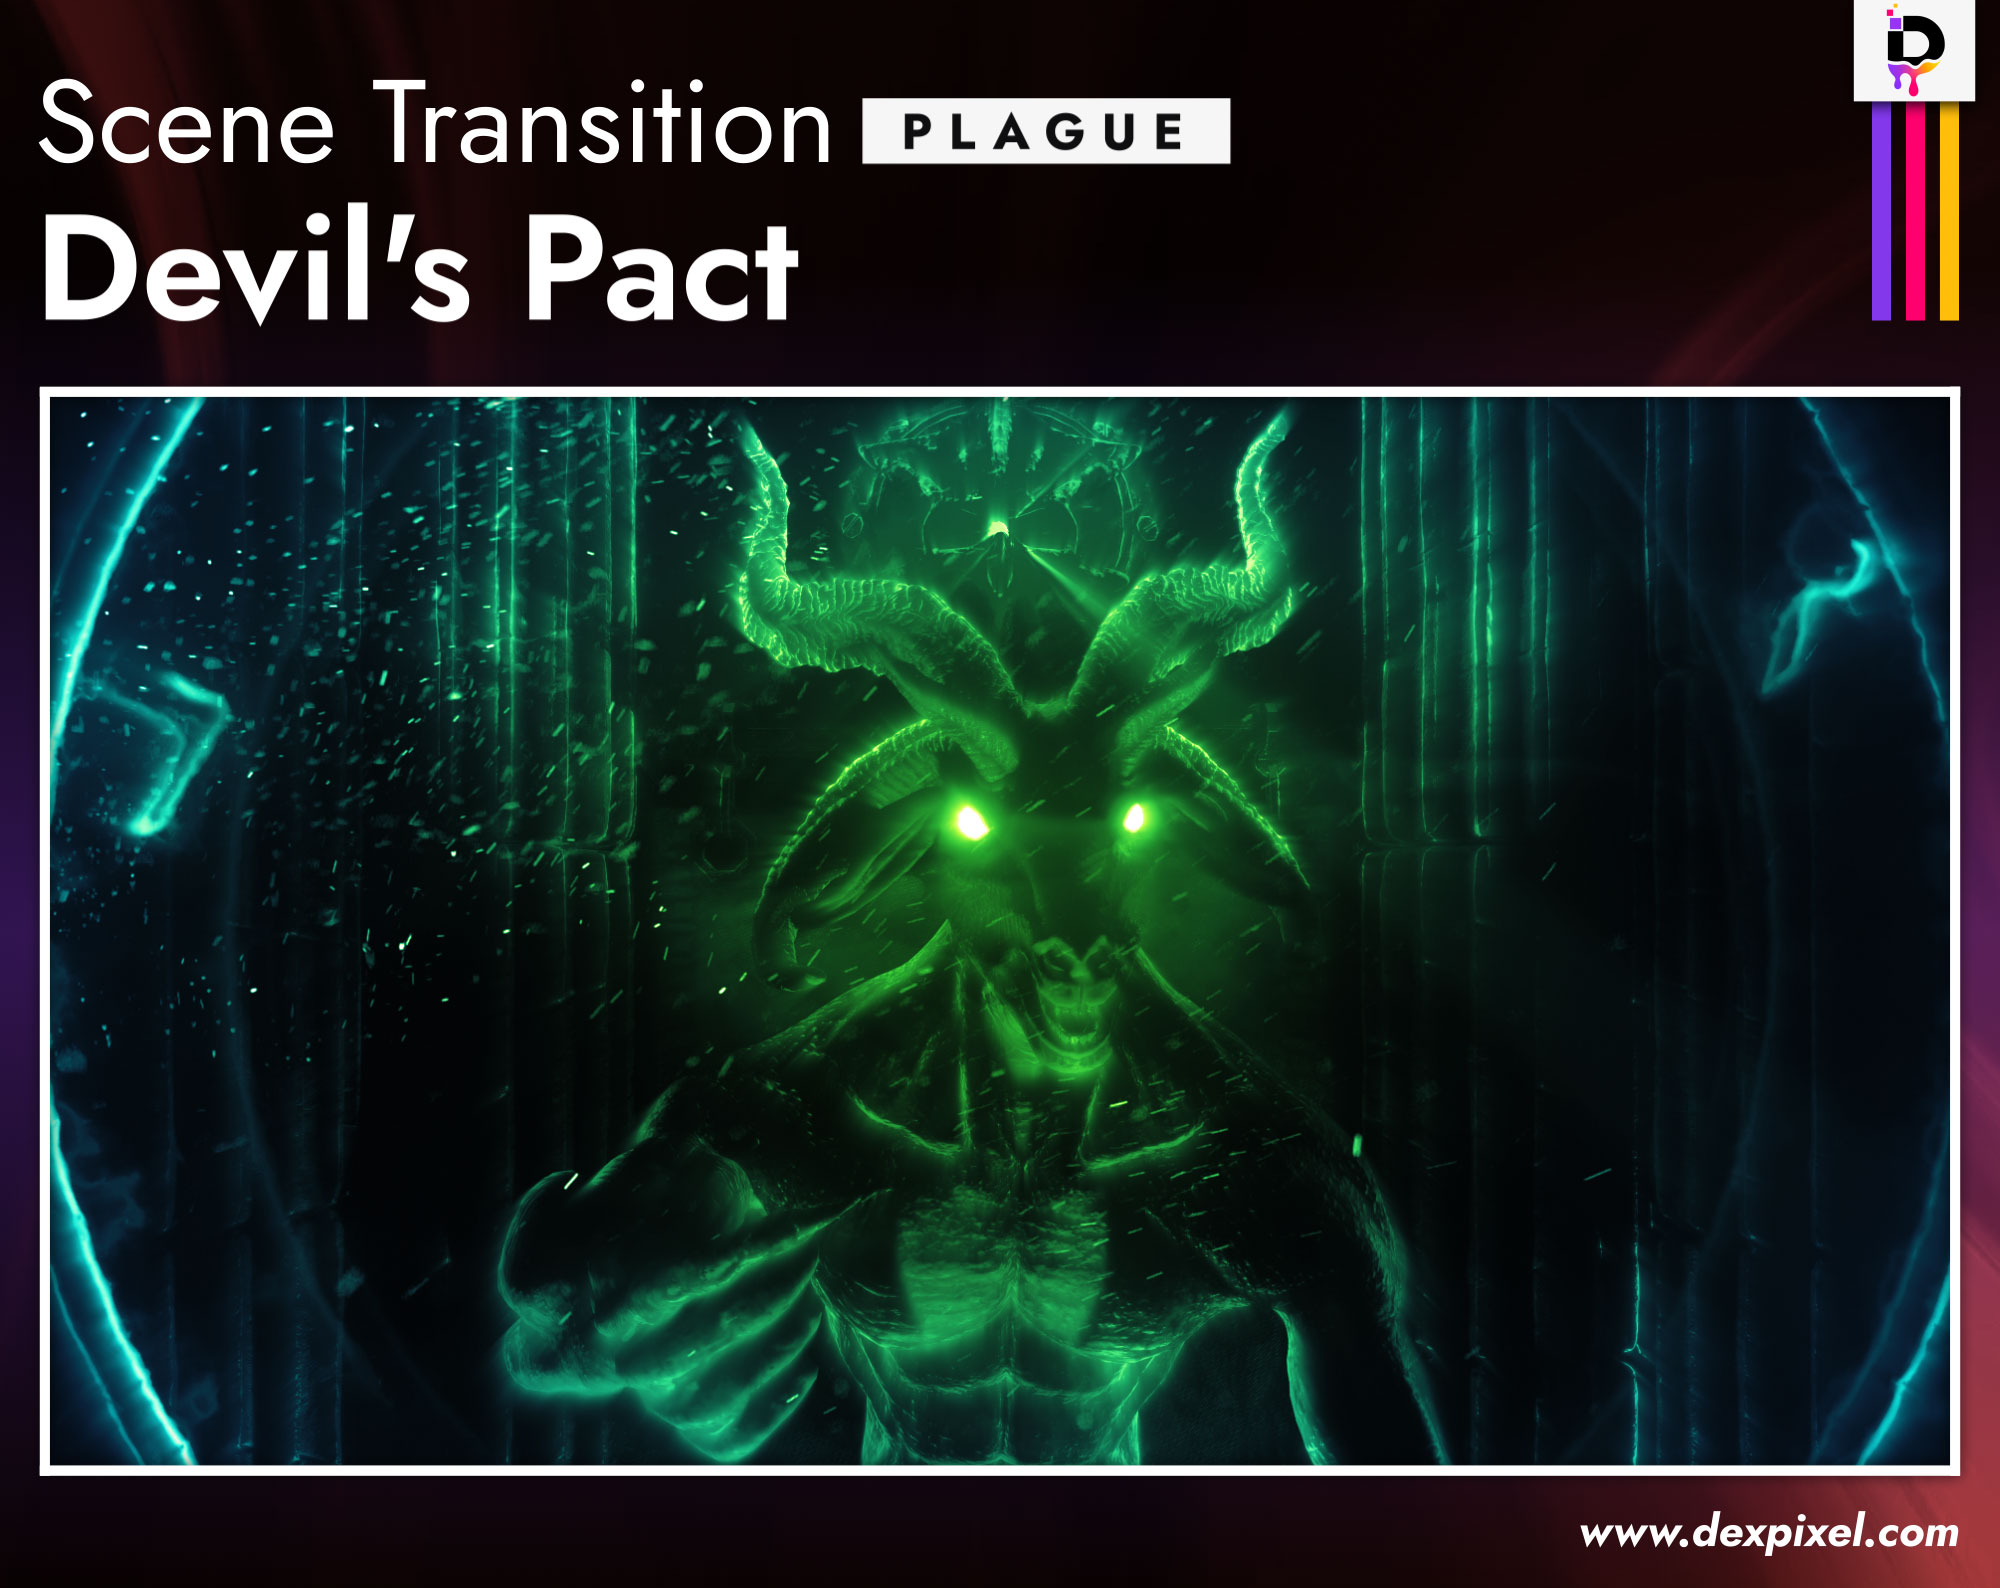 Scene Transition Dexpixel Devils Pact Plague